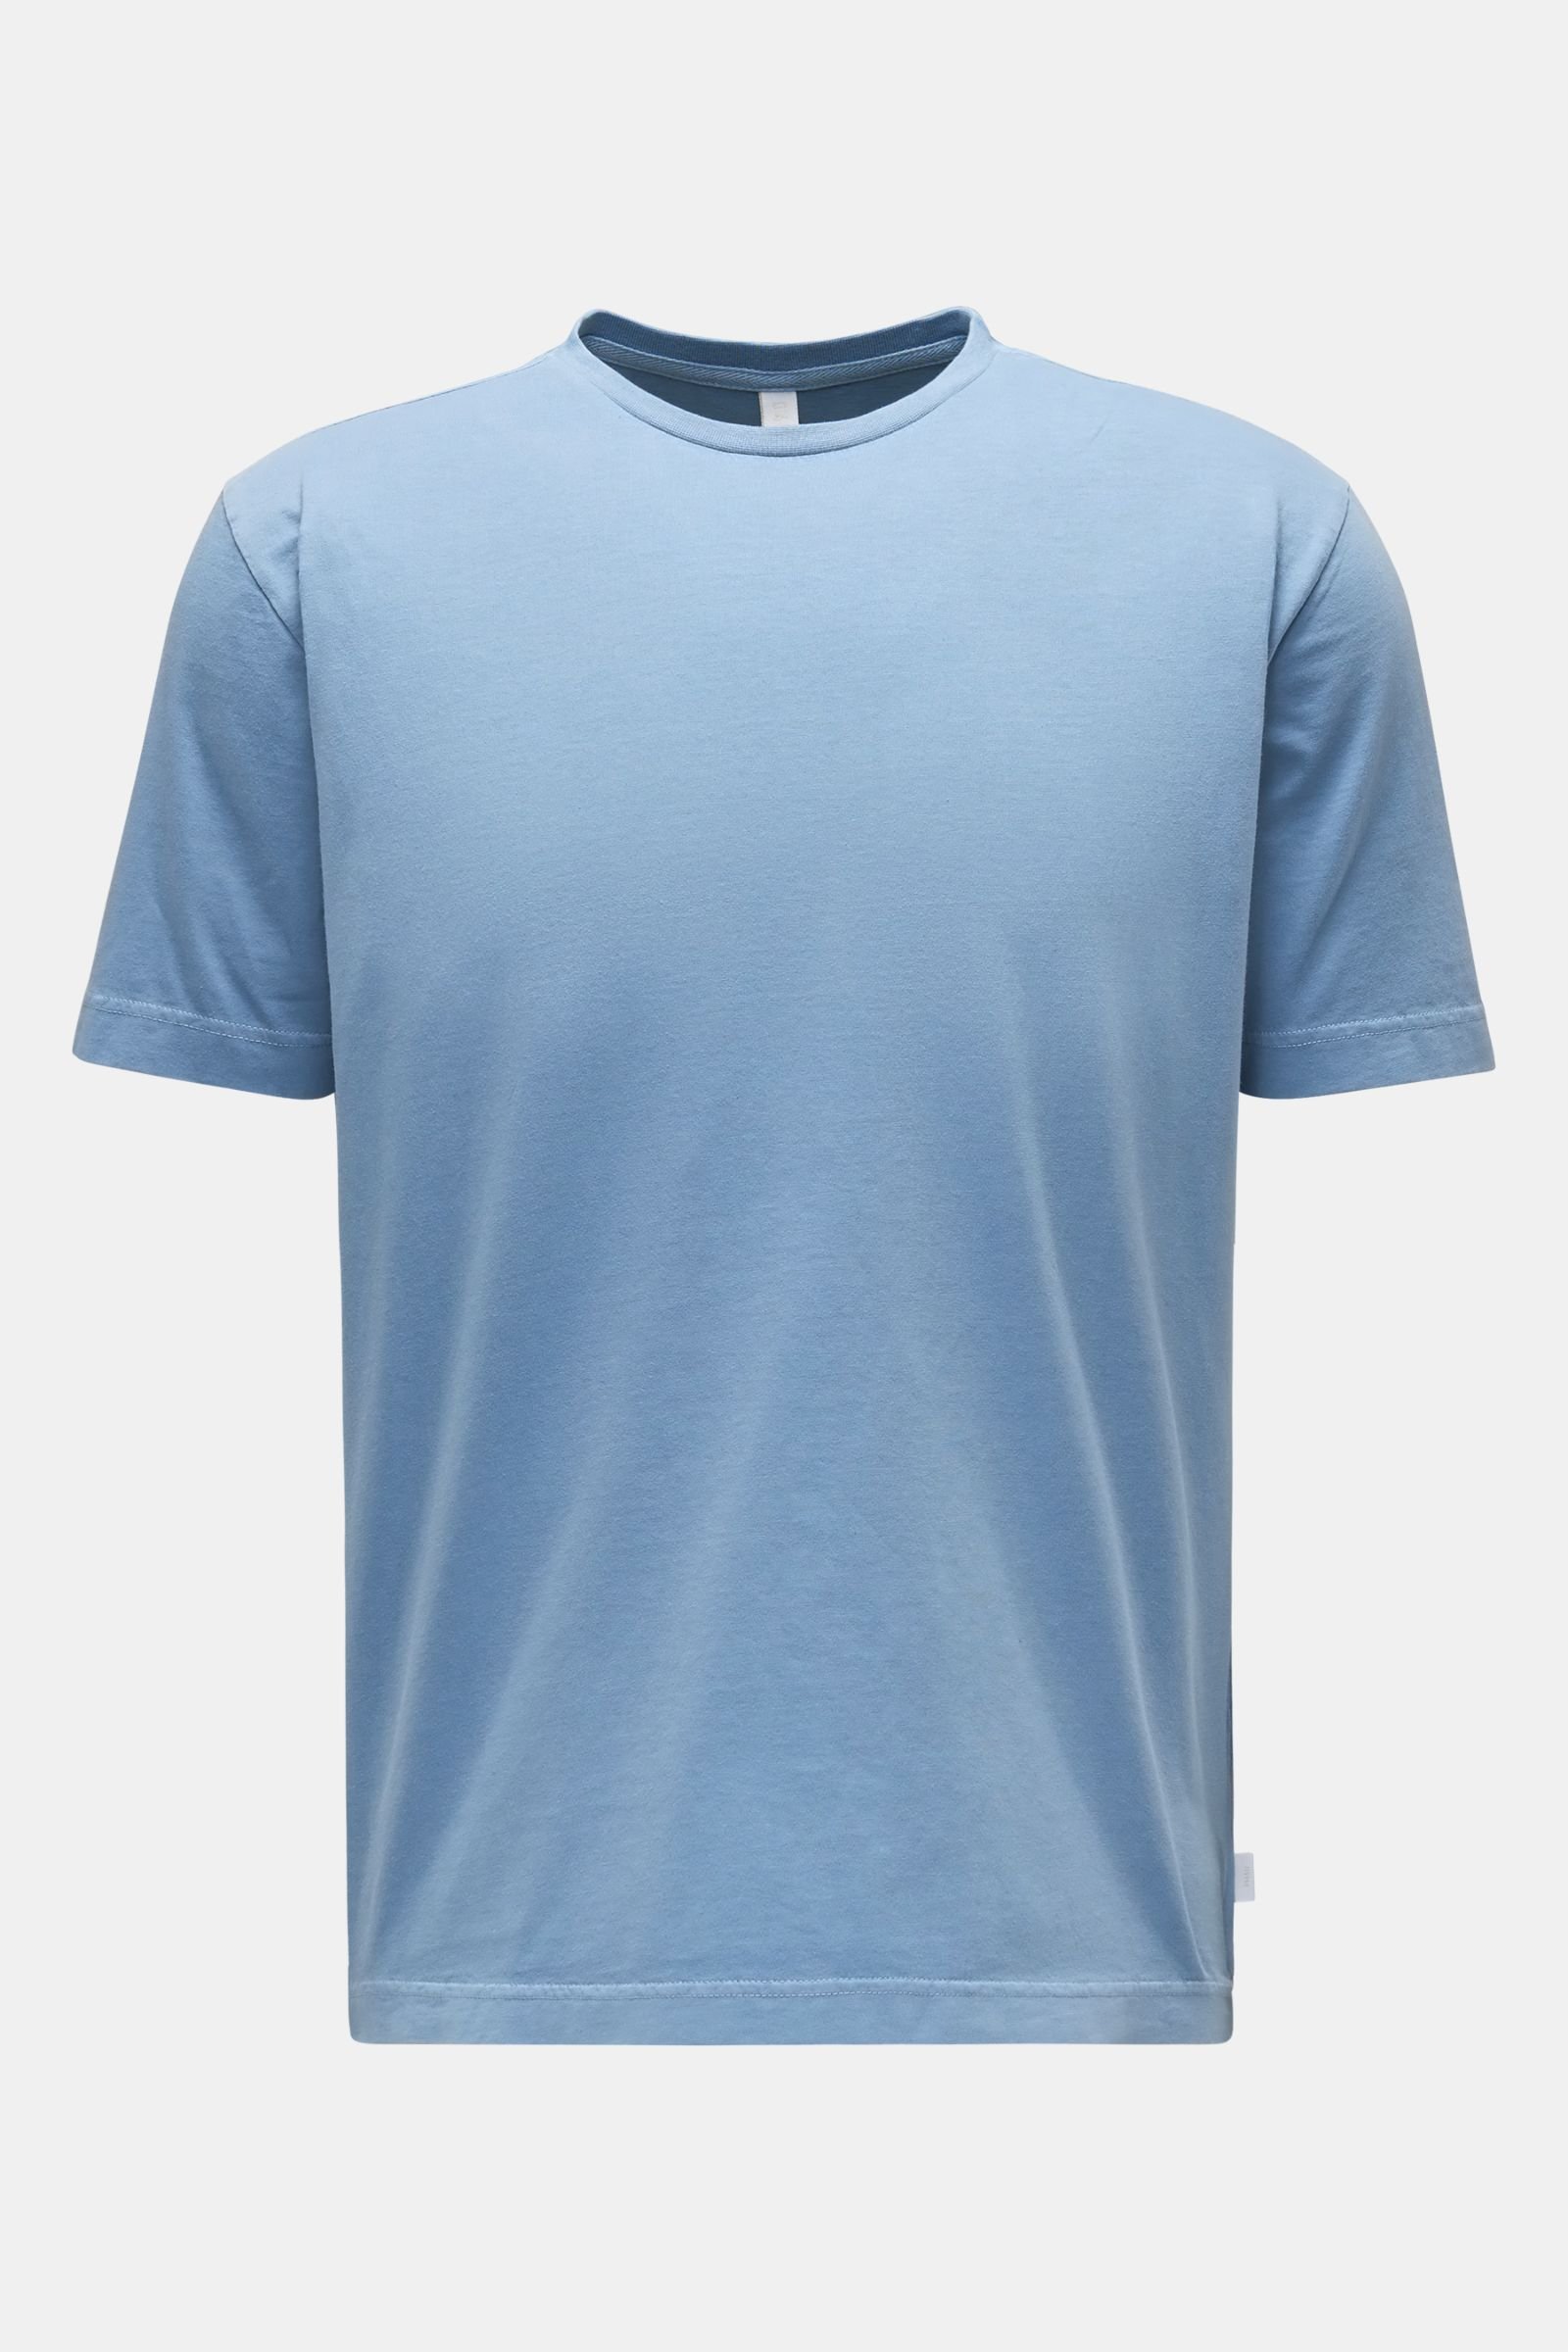 Crew neck T-shirt 'Jersey Tee' light blue